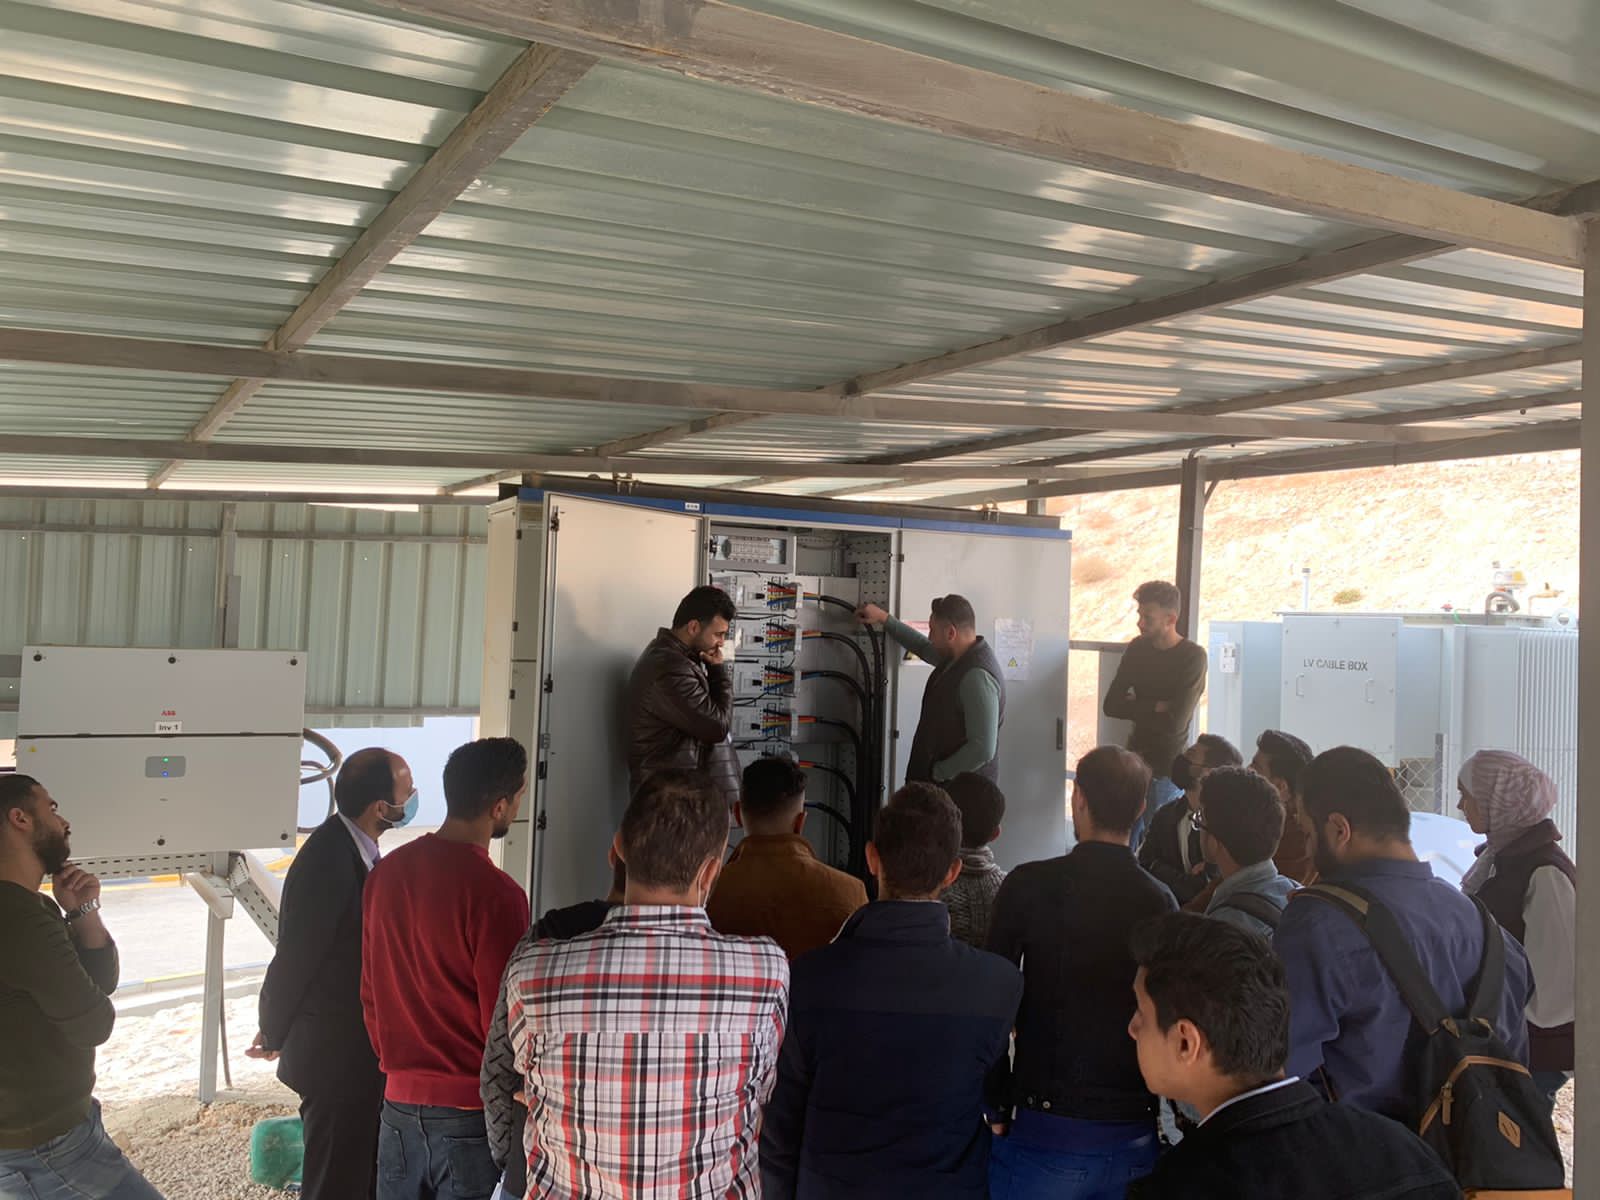 قسم هندسة الطاقة المتجددة ينظم زيارة ميدانية لأحد مشاريع الطاقة الشمسية في الأردن4